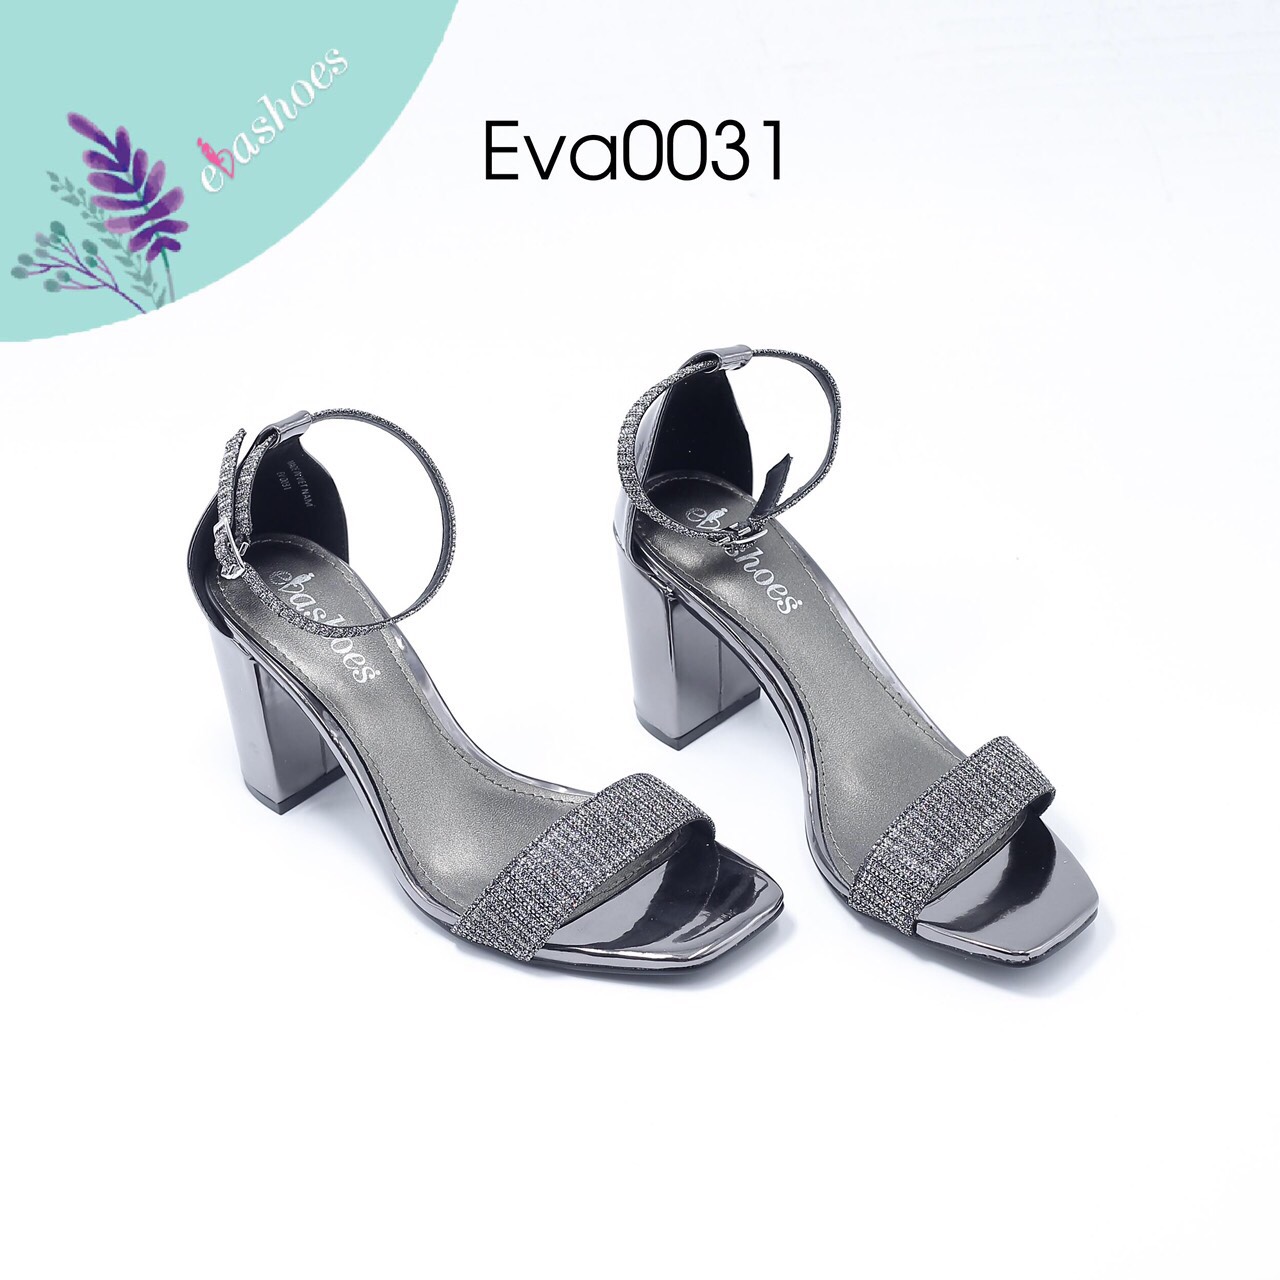 Sandal cao gót EVA0031